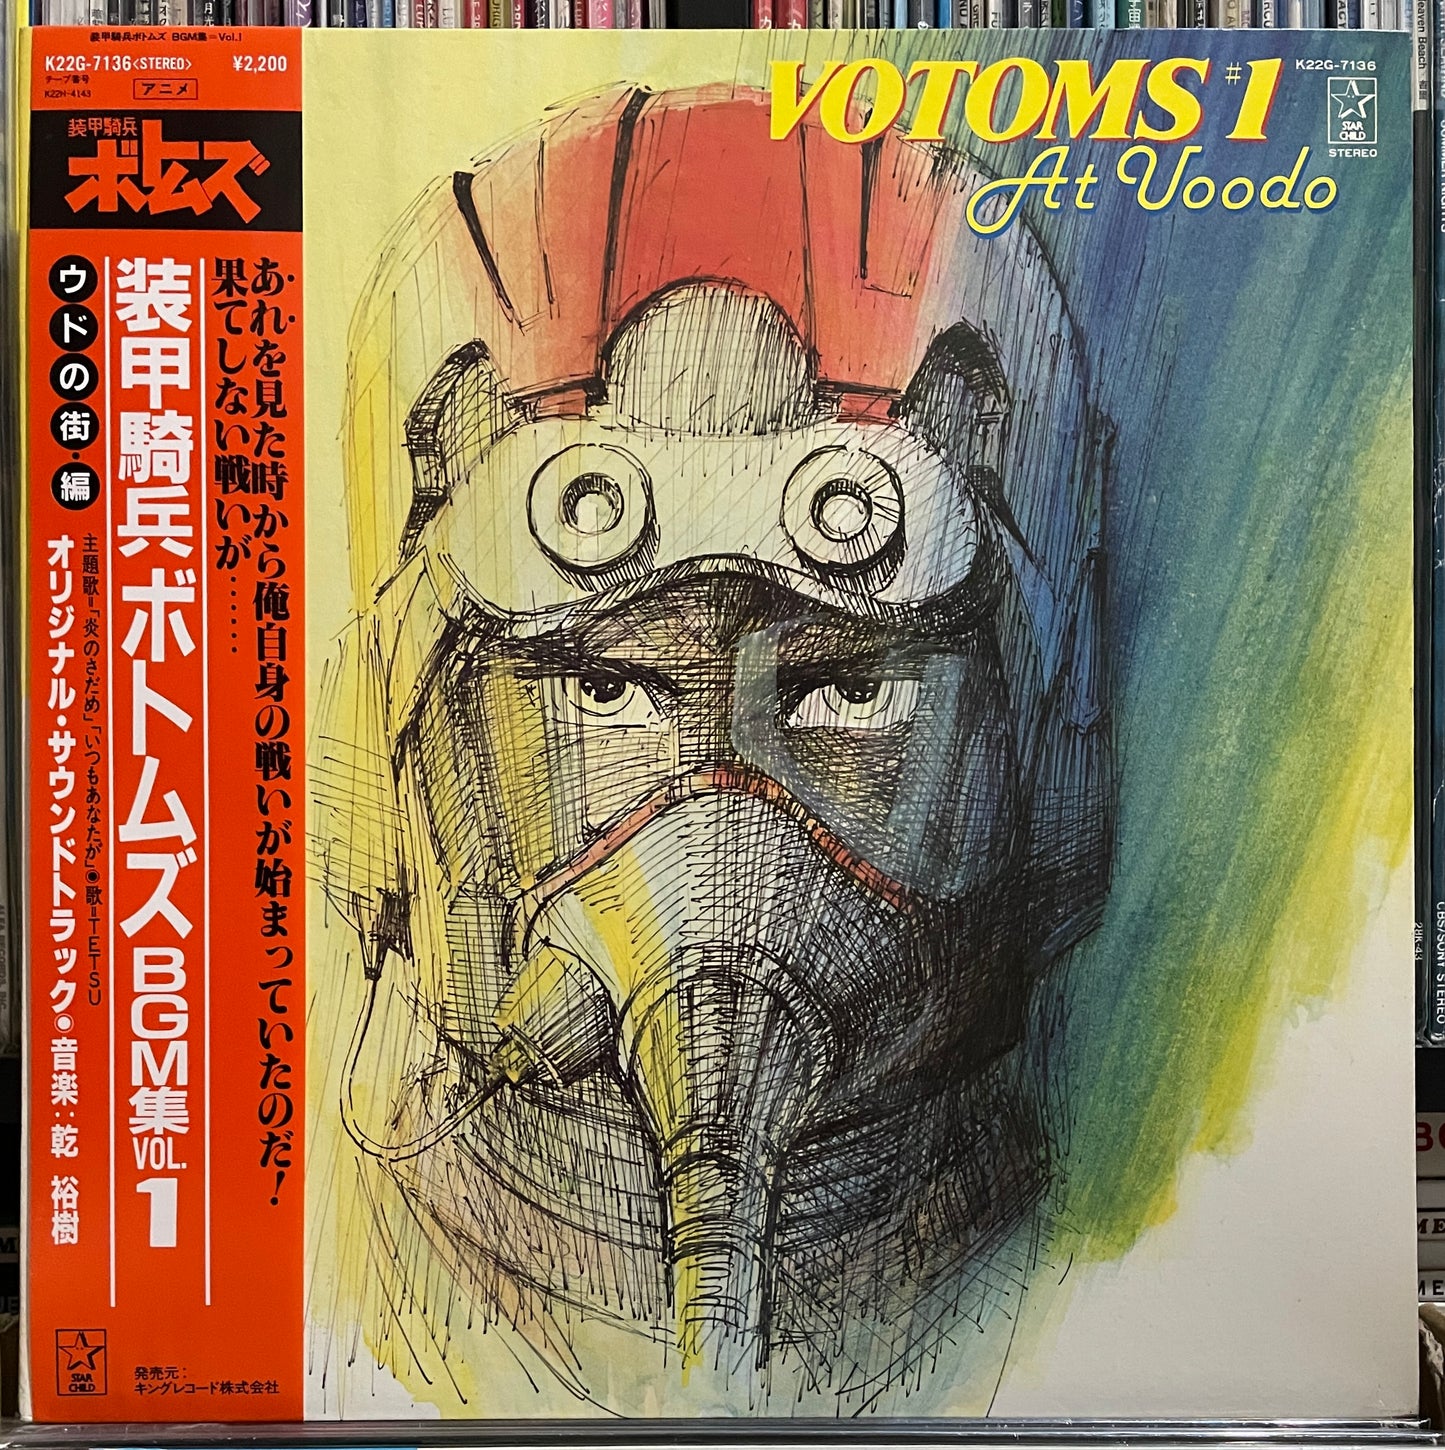 装甲騎兵ボトムズ “Votoms Vol. 1” anime BGM (1983)